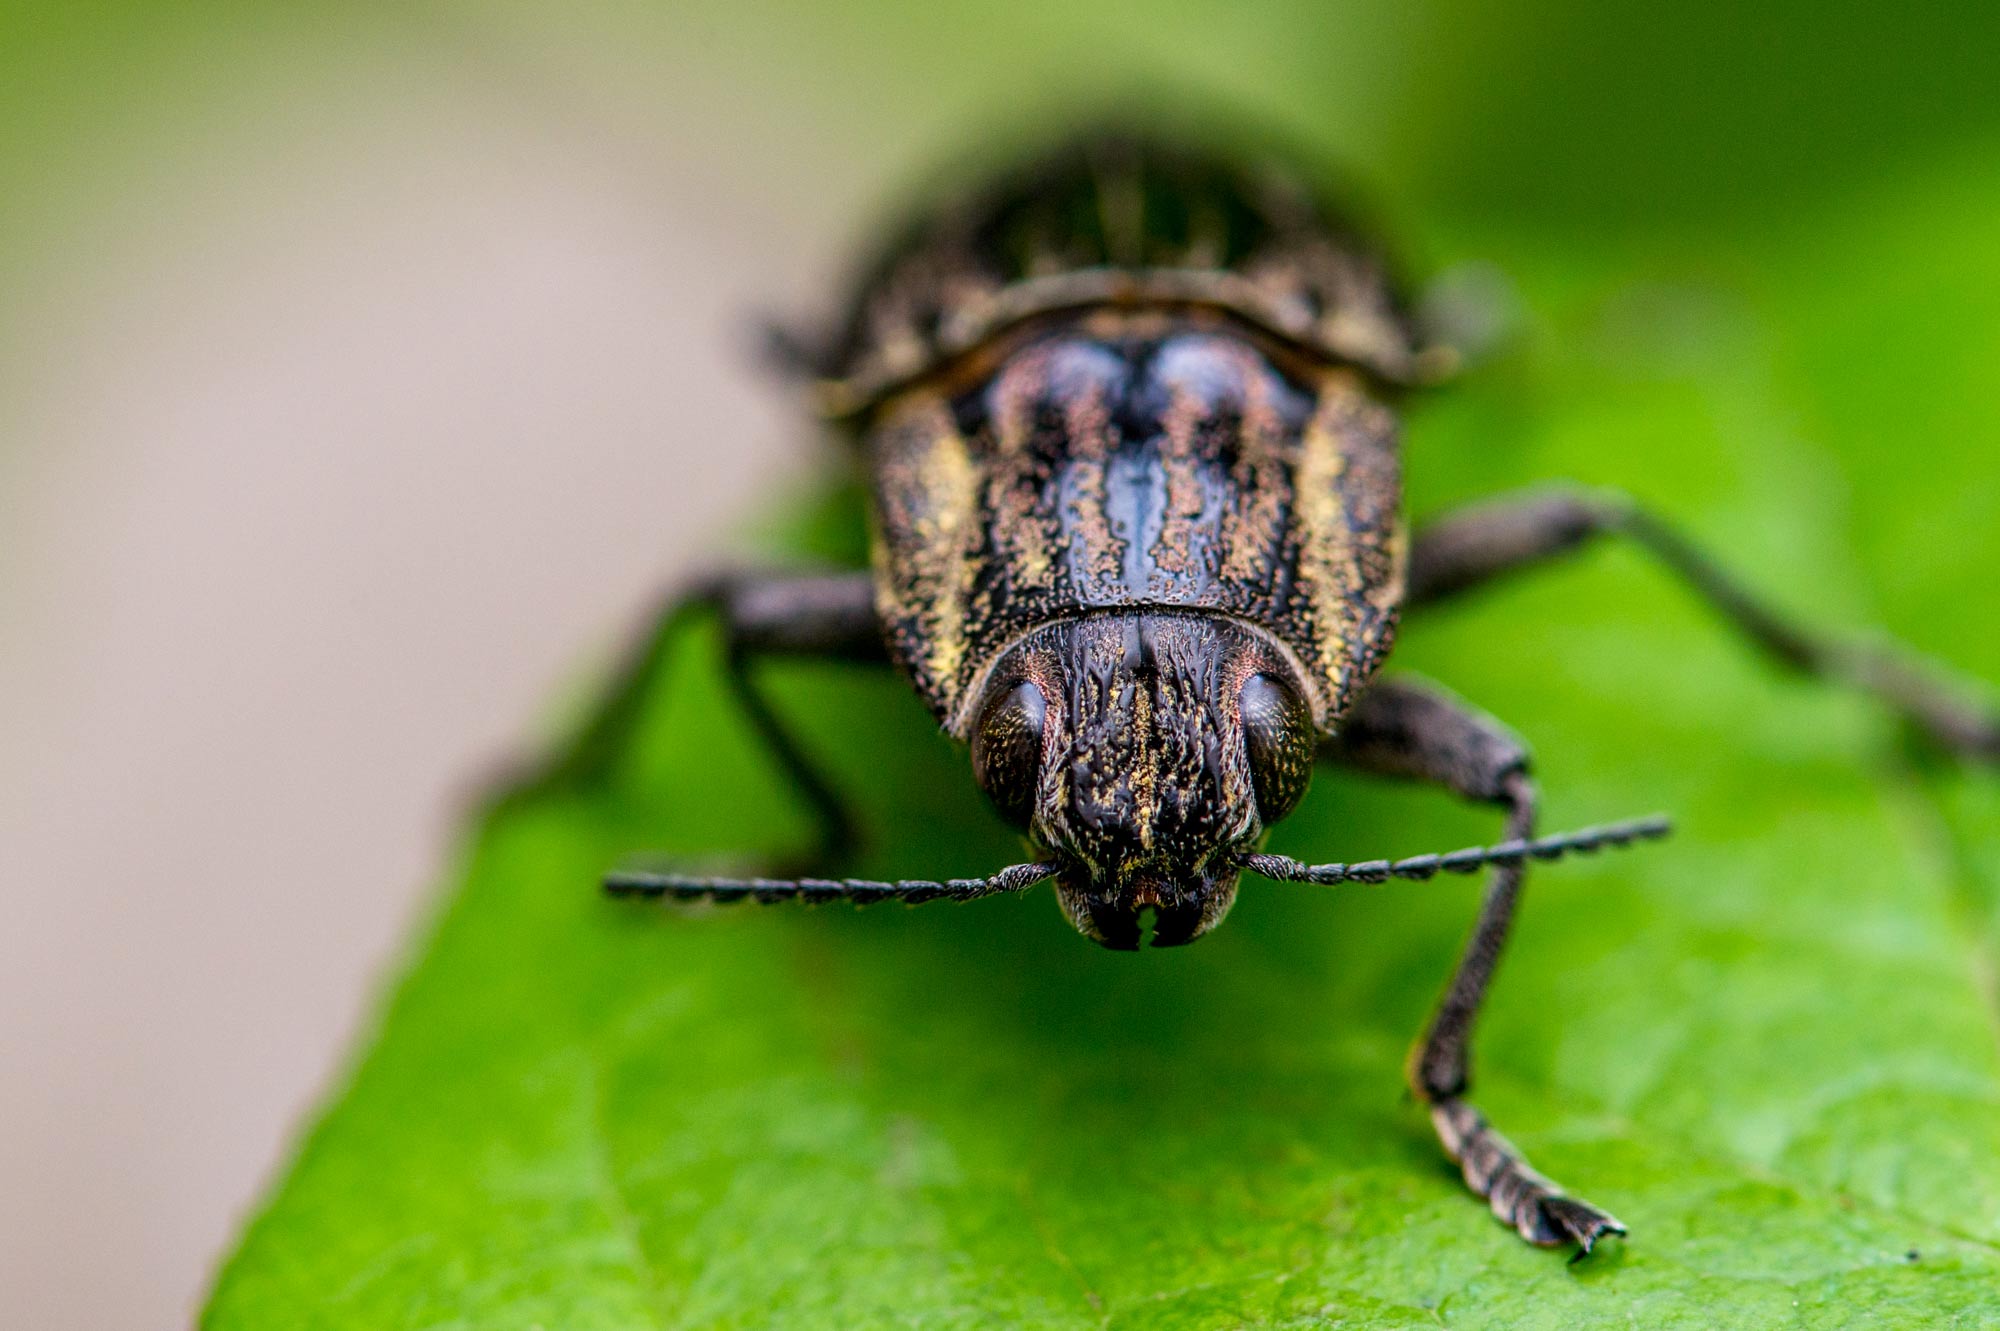 ウバタマムシ 虫の写真と生態なら昆虫写真図鑑 ムシミル